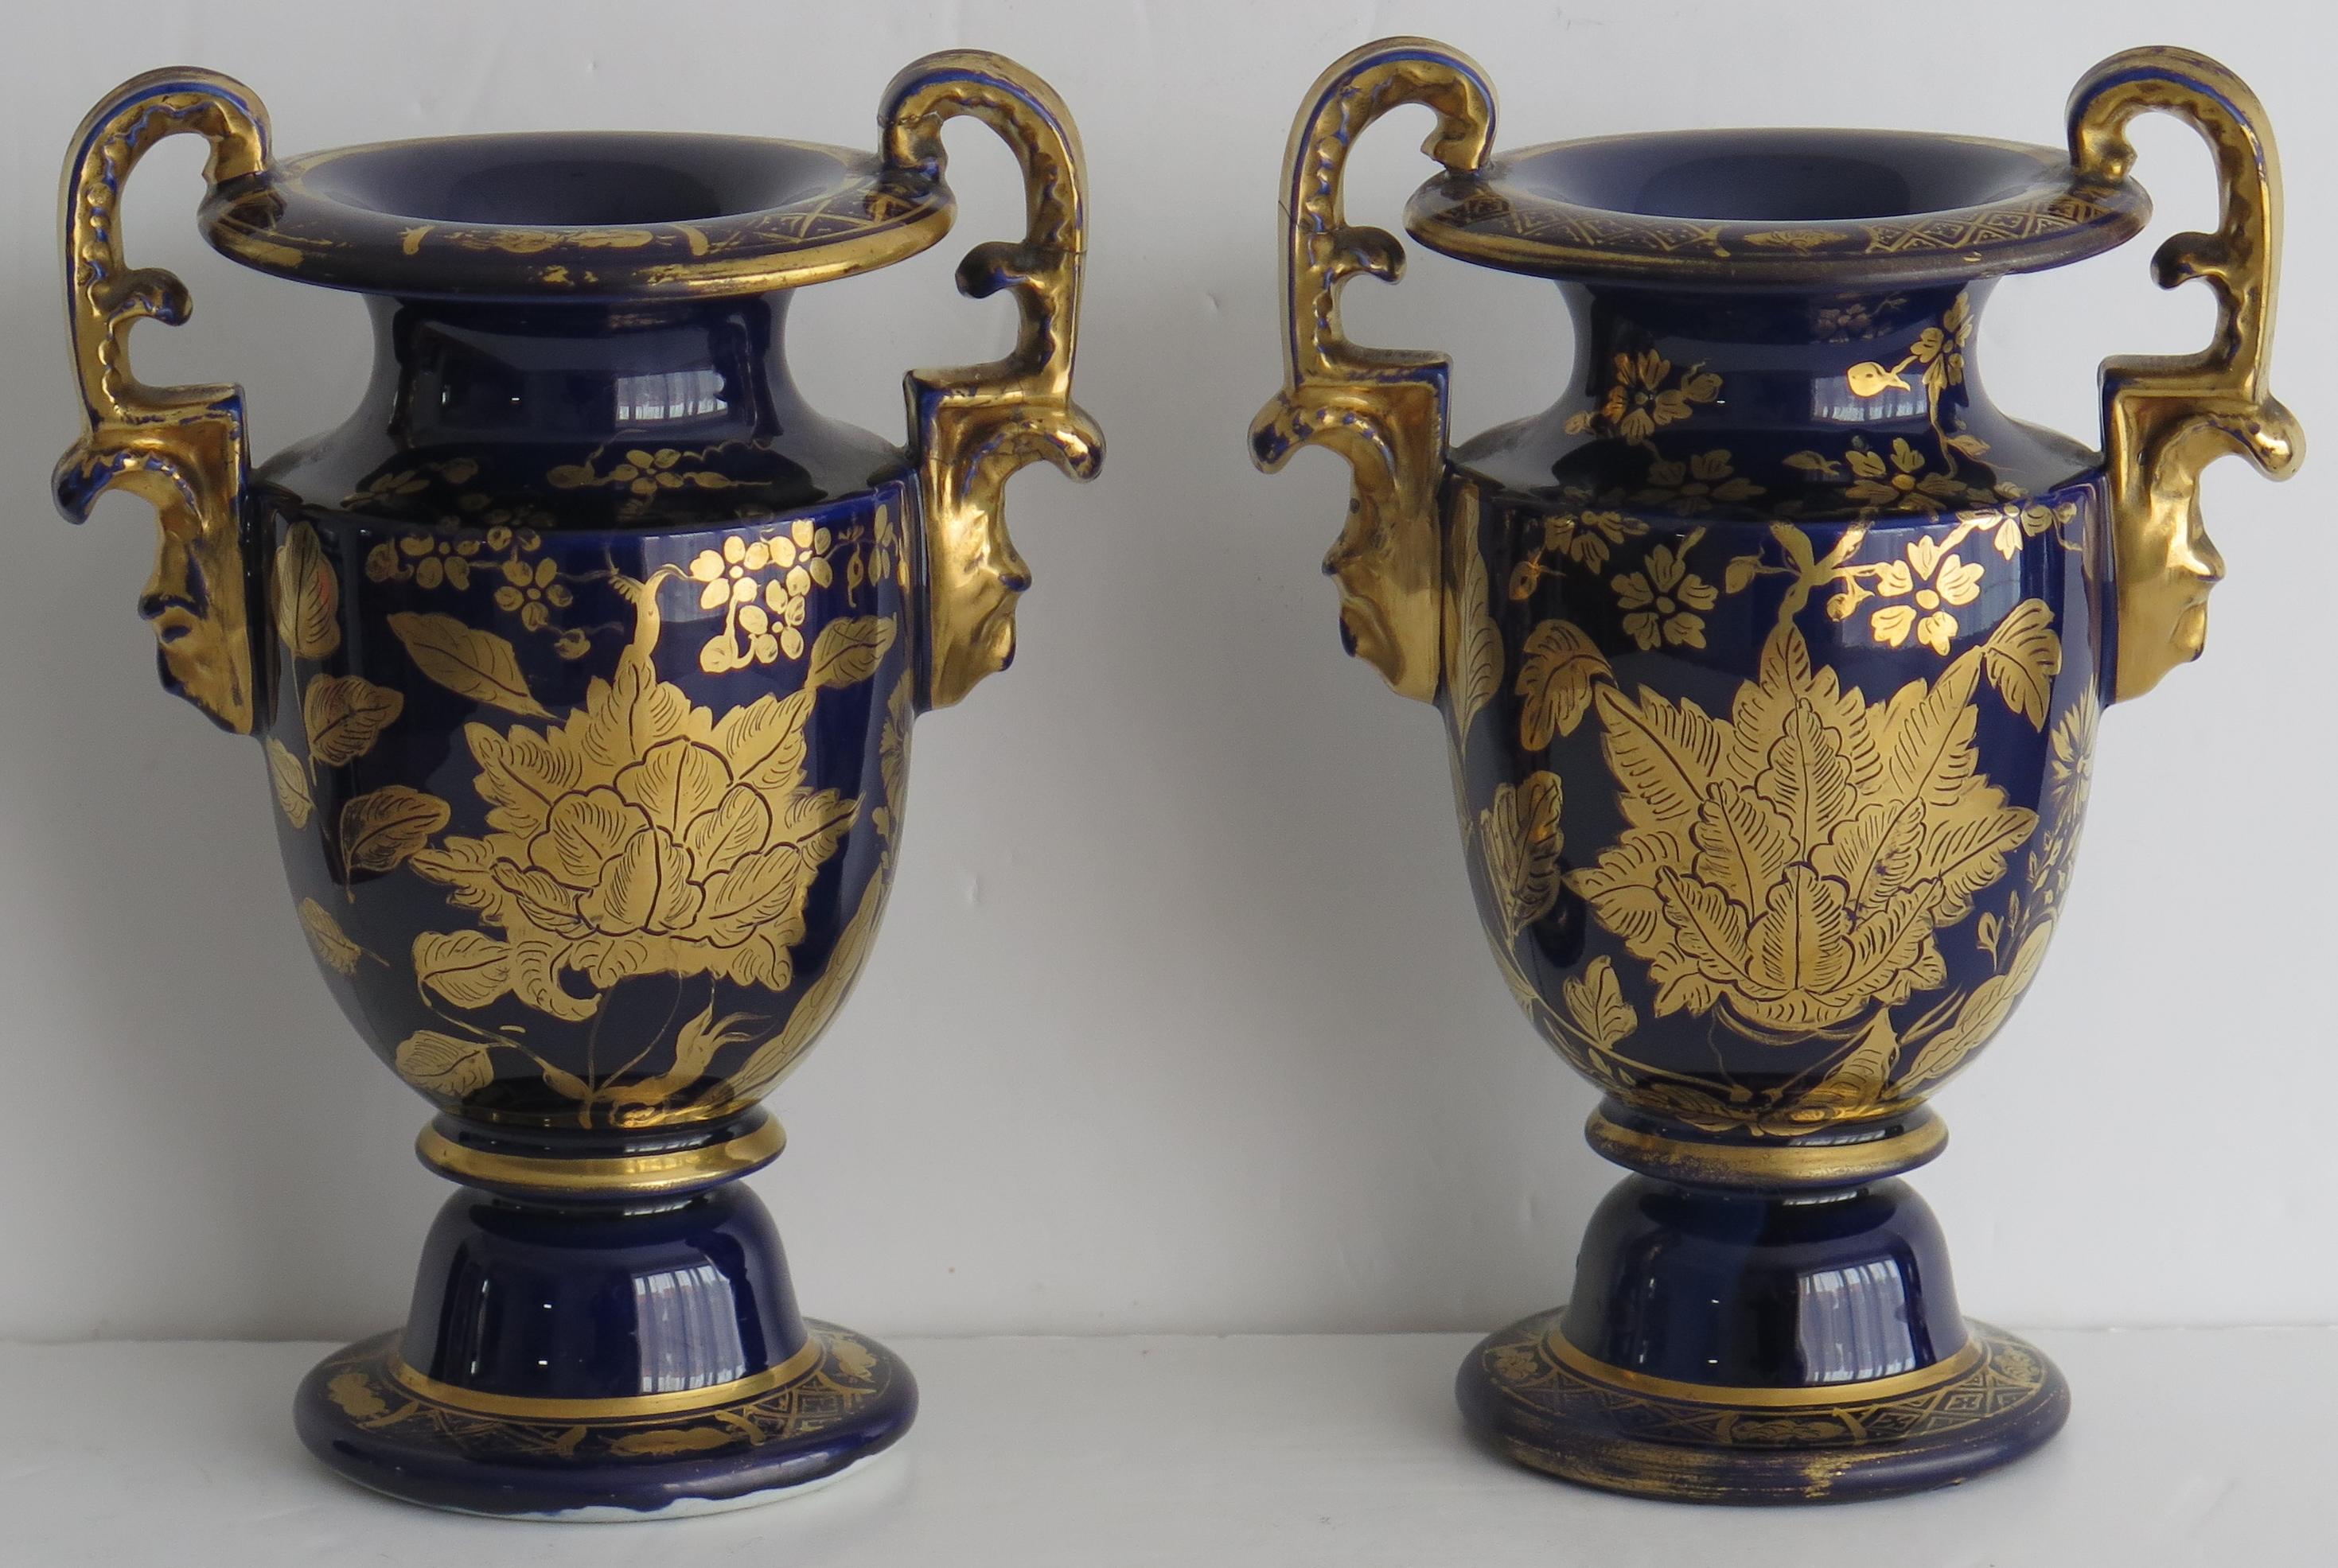 Il s'agit d'une paire rare de vases en pierre de fer avec de hautes poignées en boucle, fabriqués par l'usine Mason's, en Angleterre, au début du 19e siècle, vers 1815-1820.

Ces vases à pied sont fabriqués dans une forme rare avec deux poignées